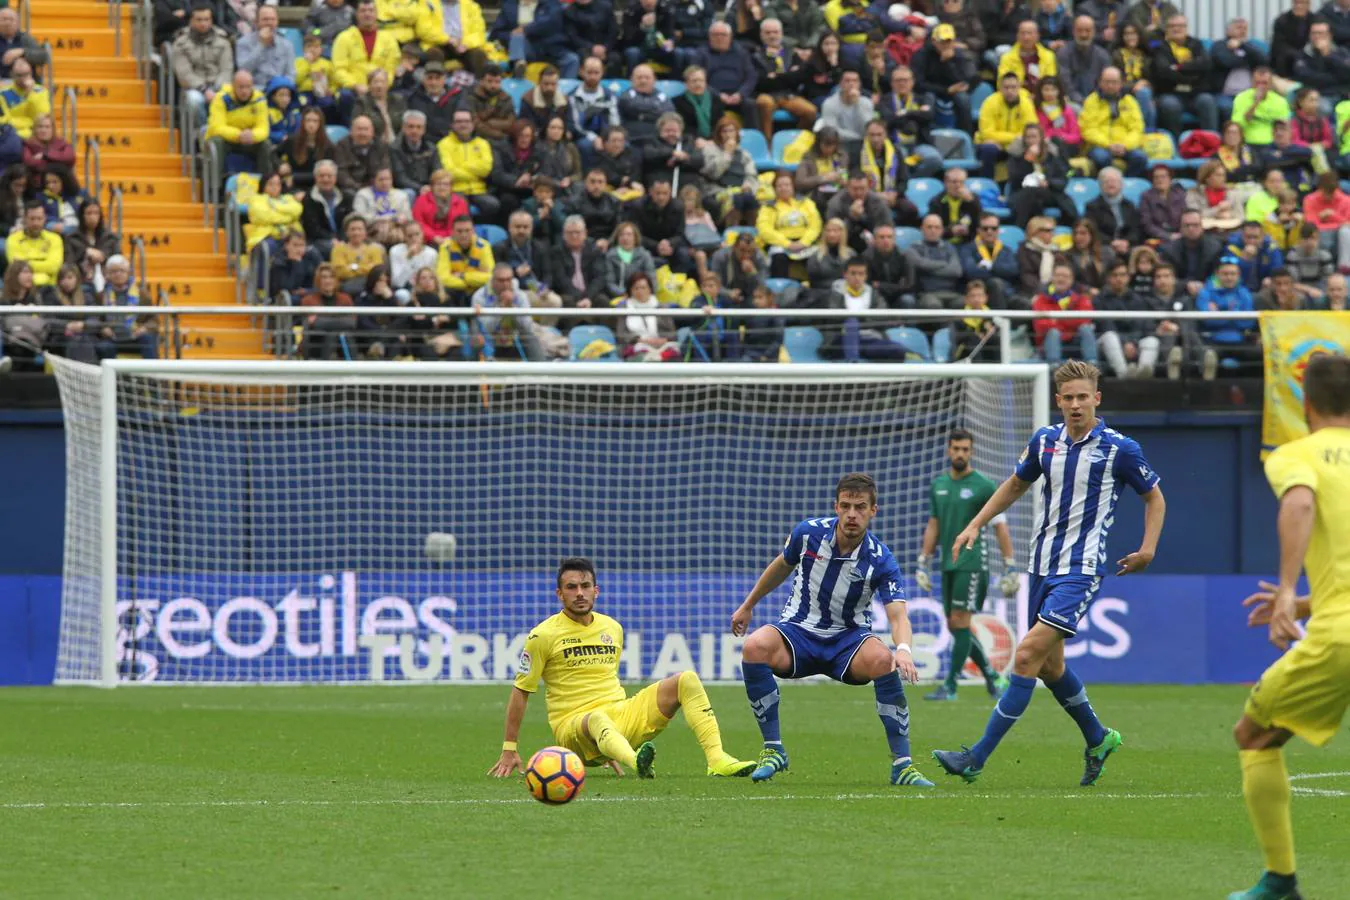 Villarreal 0 - Alavés 2